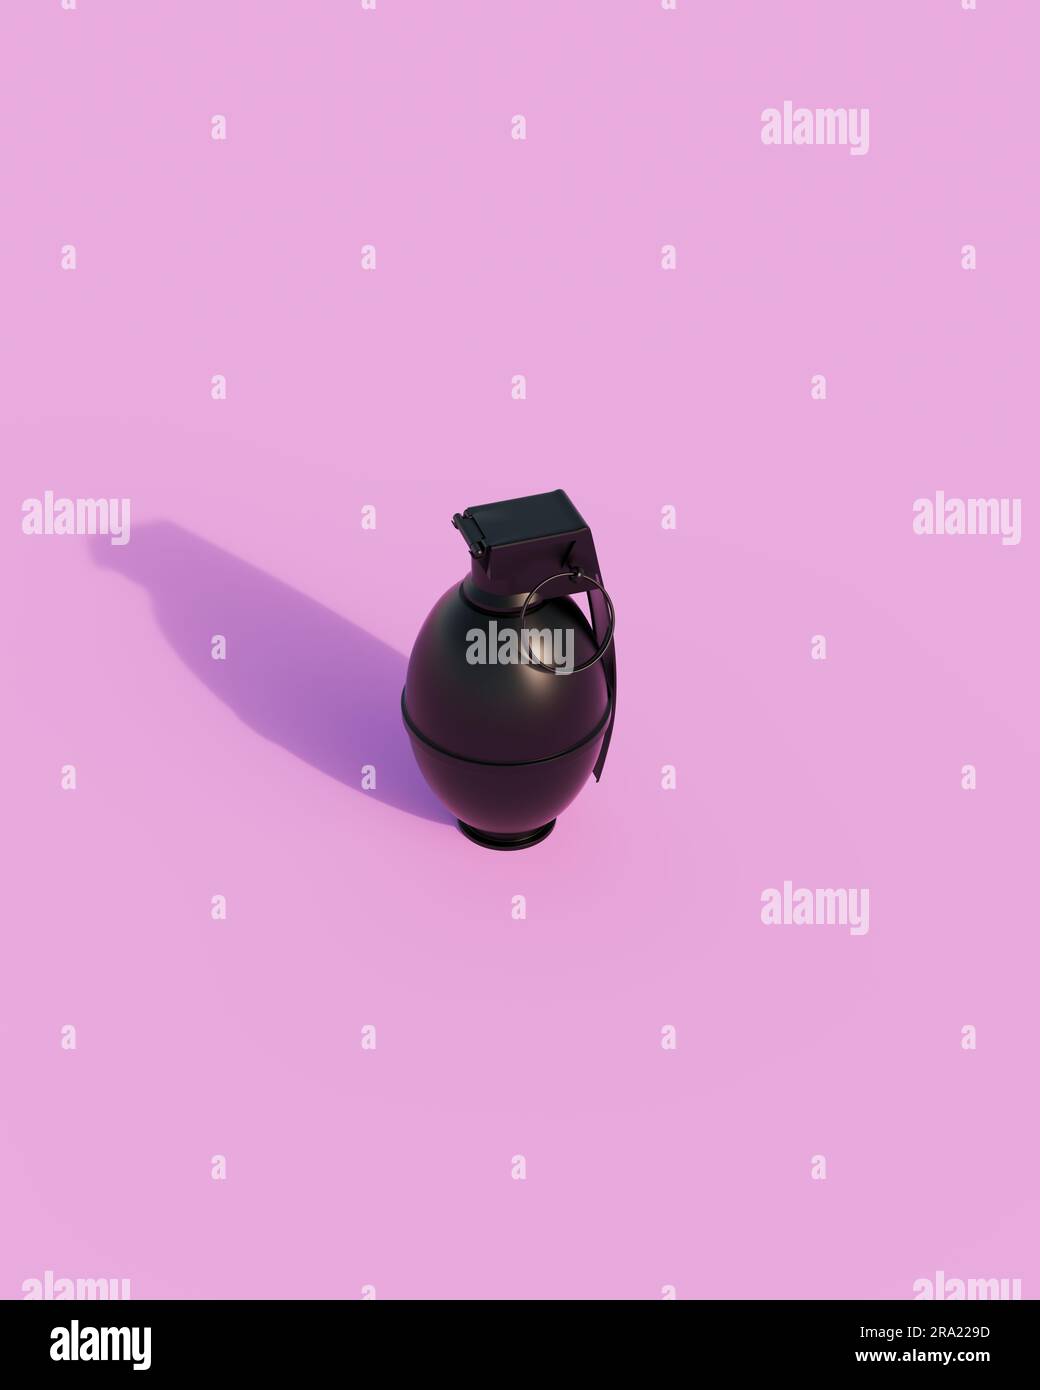 Black Shiny granata Concept arma Sunlight gen z sfondo rosa illustrazione 3d rendering digitale Foto Stock